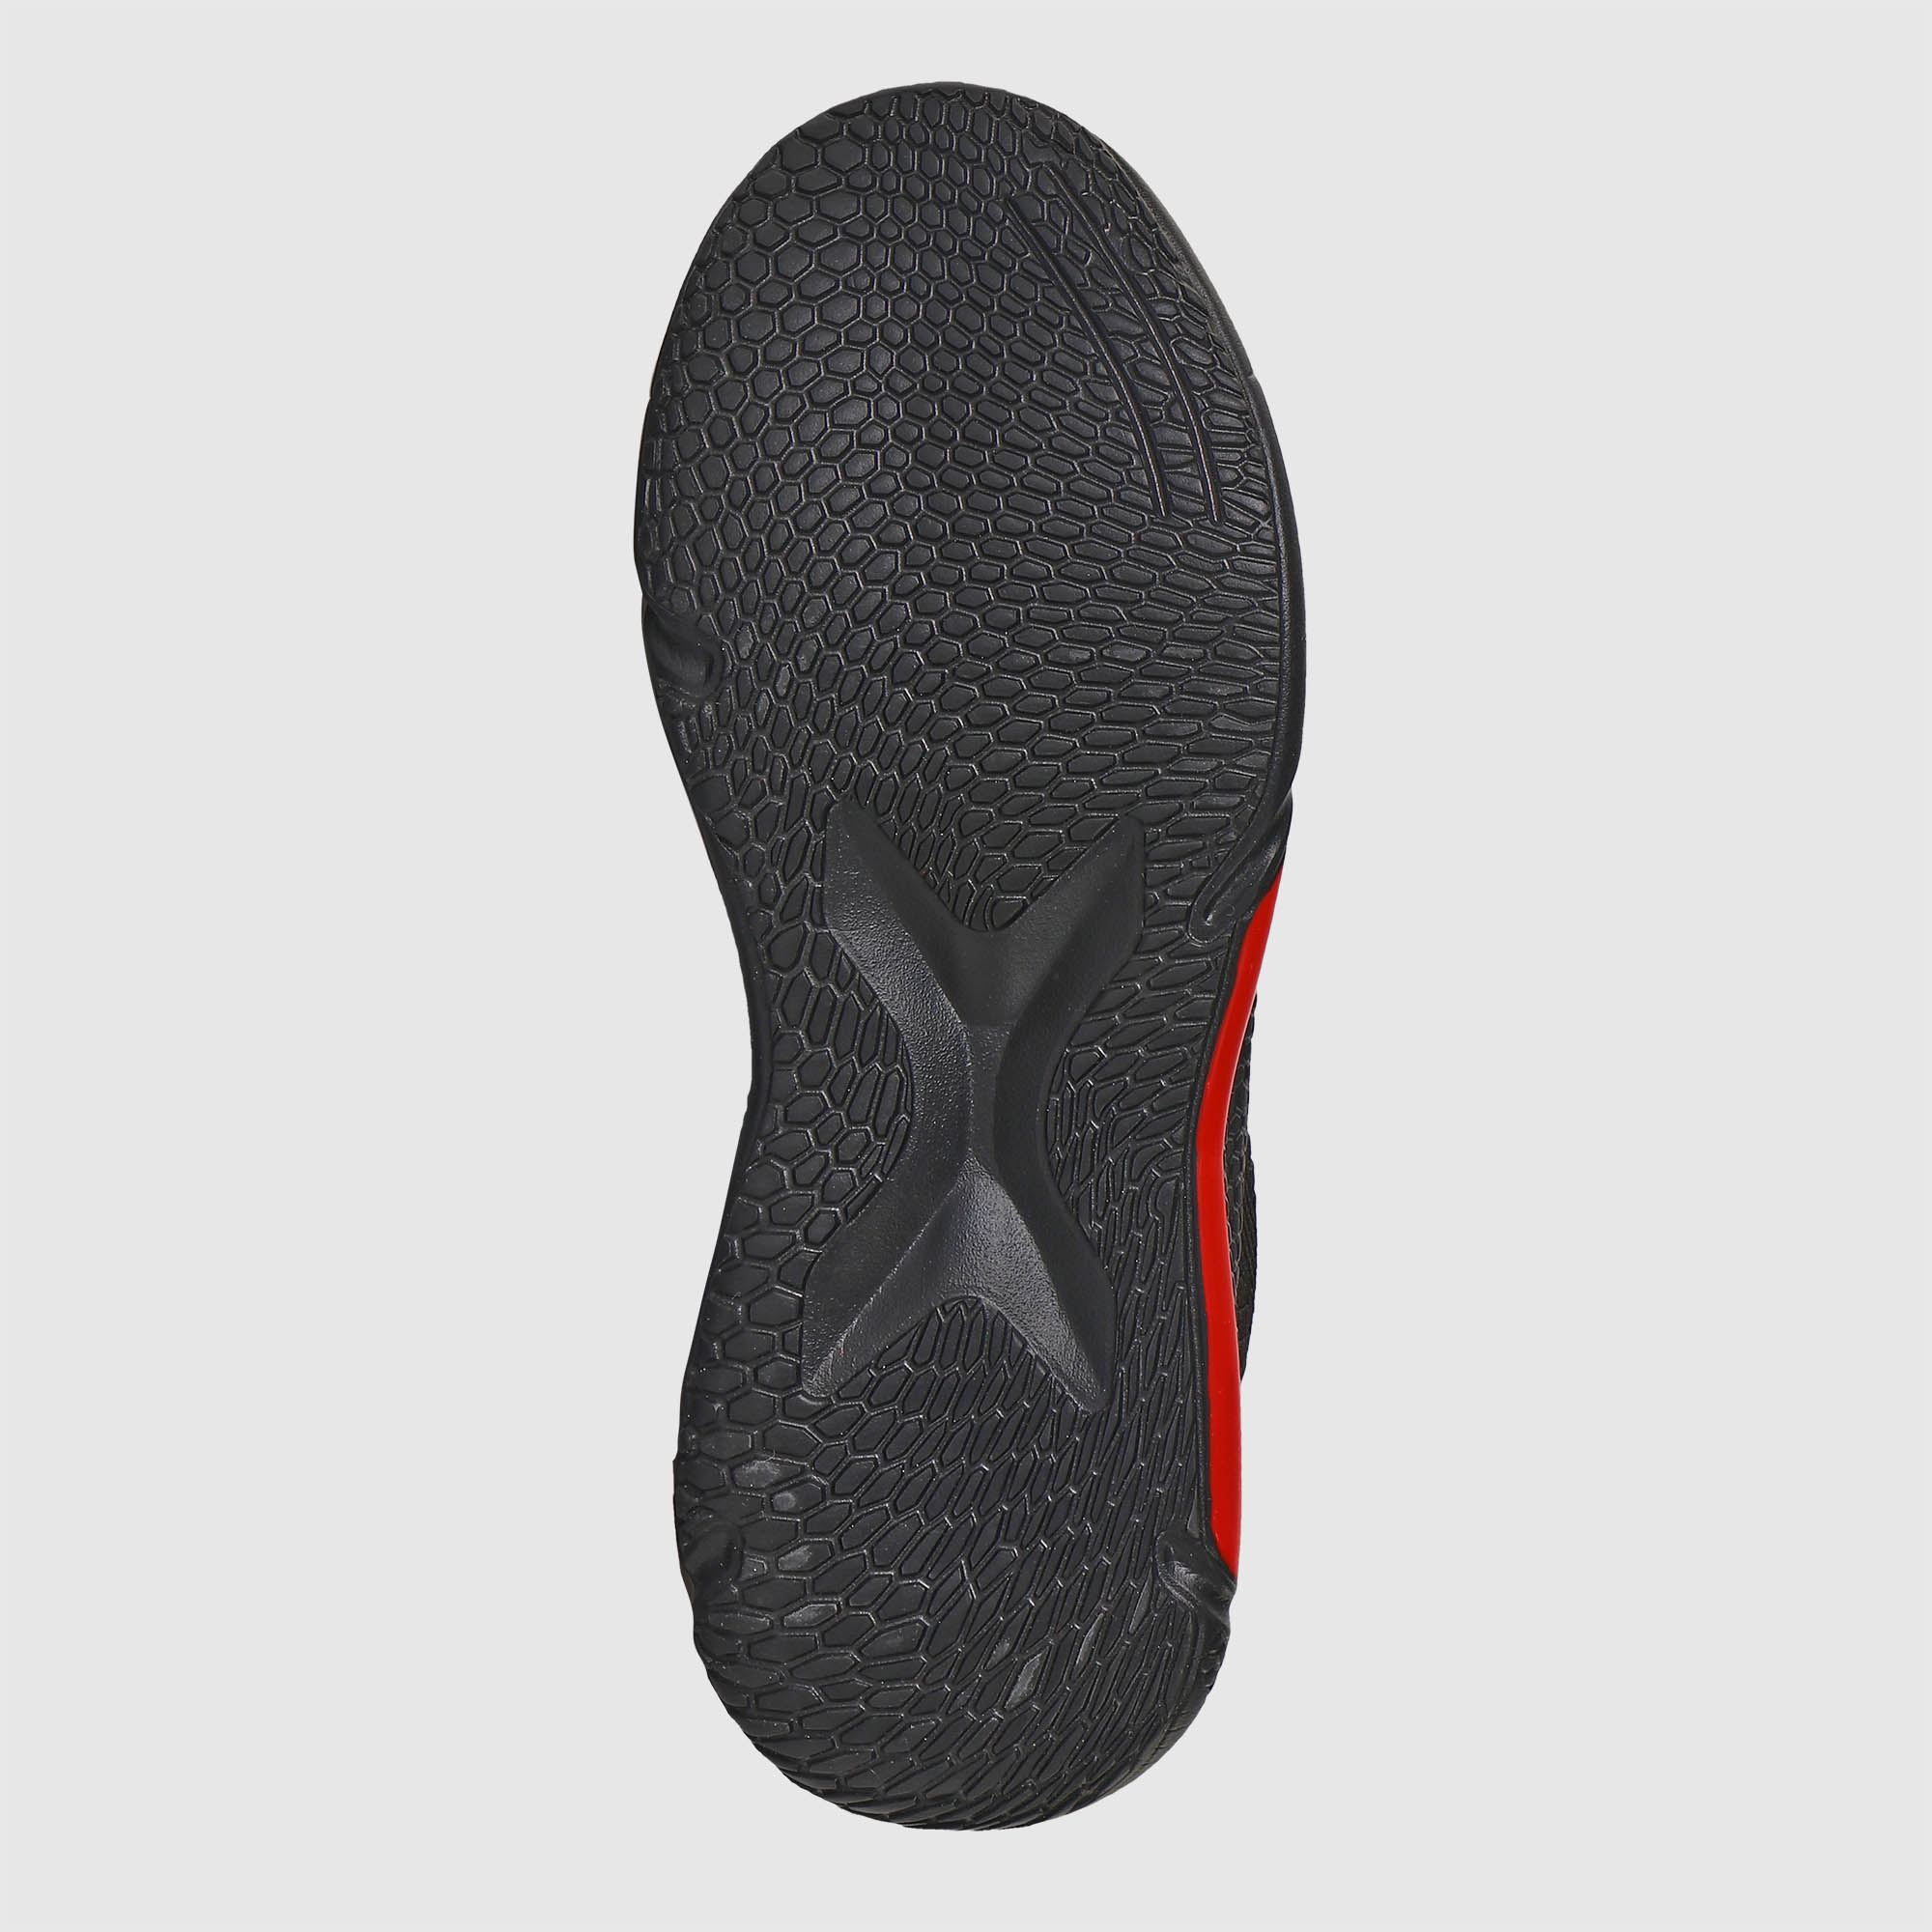 Мужские кроссовки TG Global Красные с чёрным (GT-804), цвет красный, размер 42 - фото 6